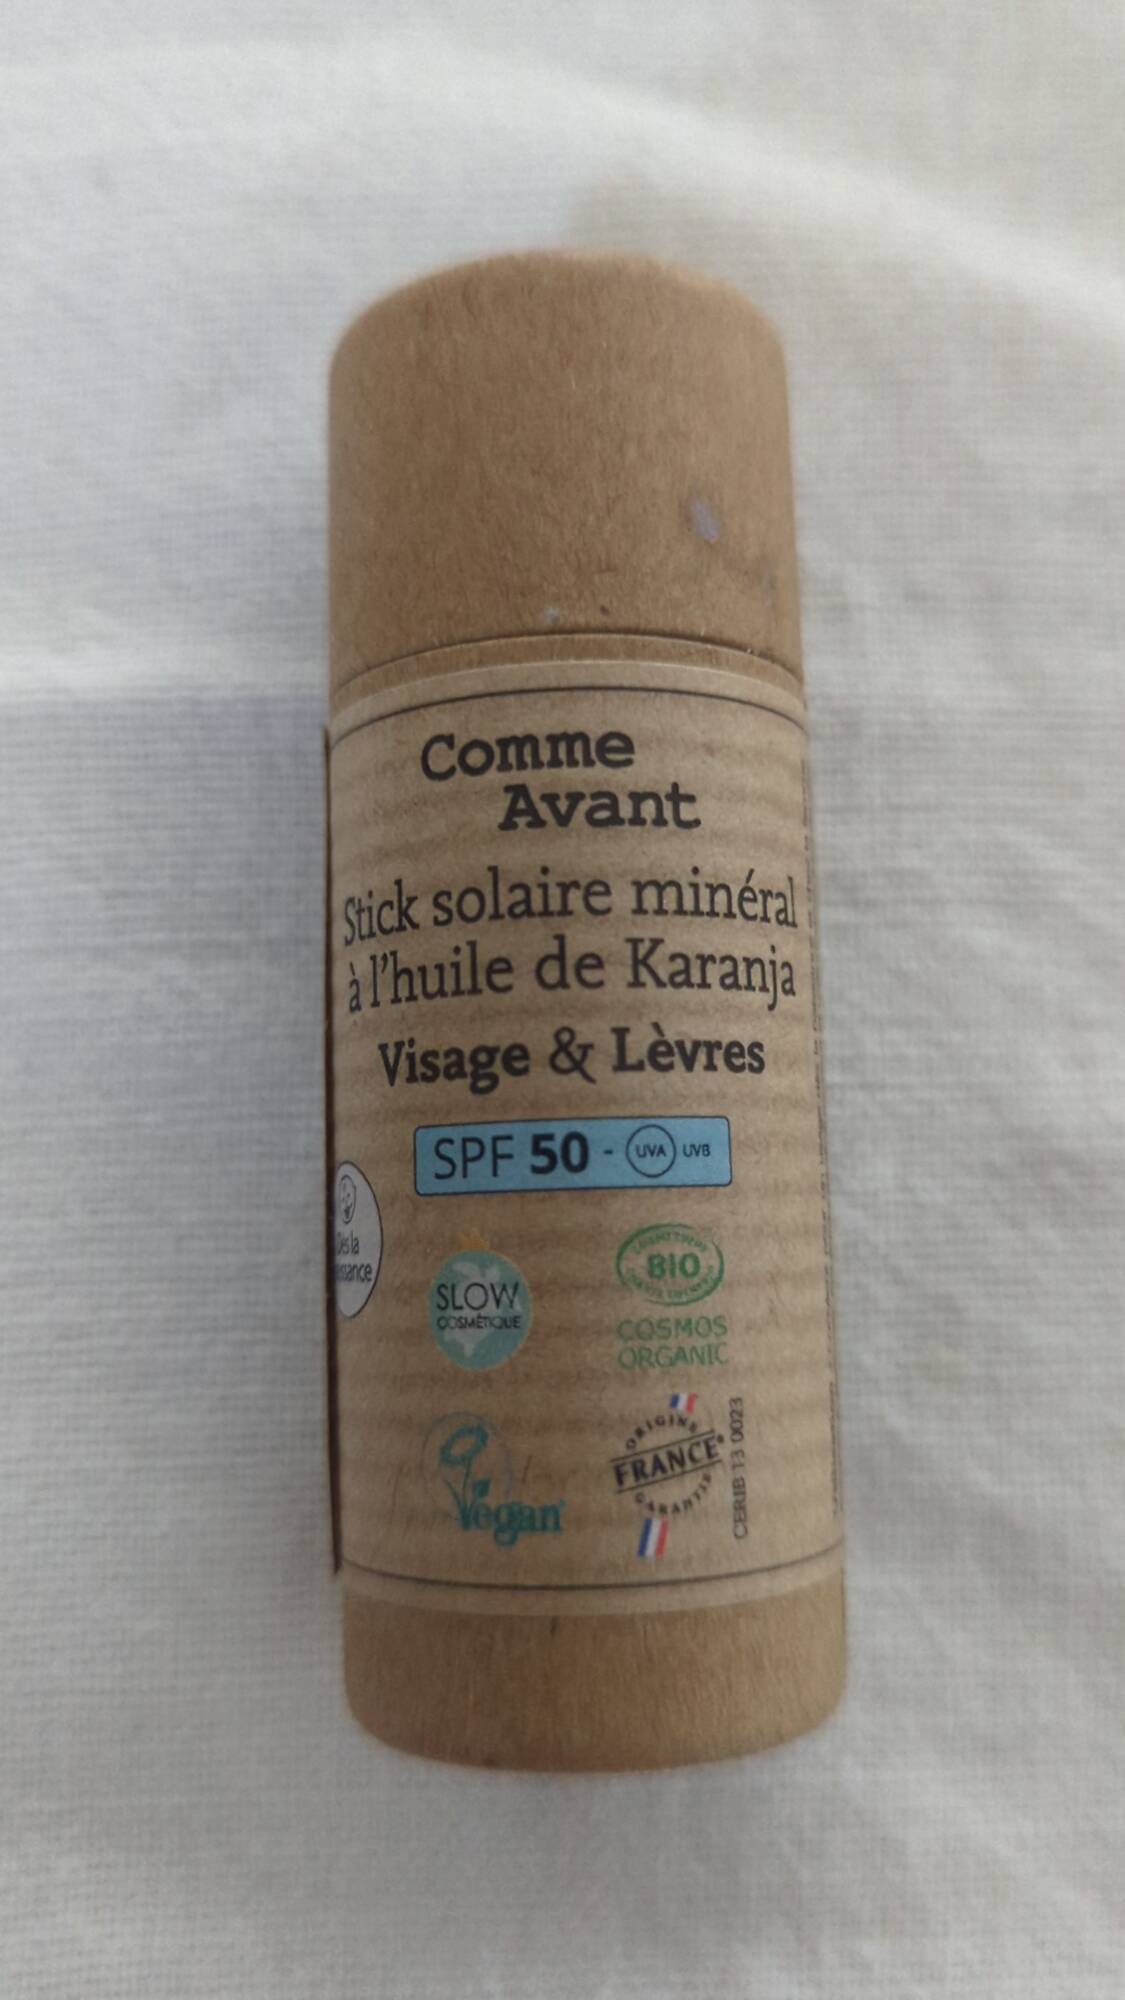 COMME AVANT - Visage & lèvres - Stick solaire minéral SPF 50